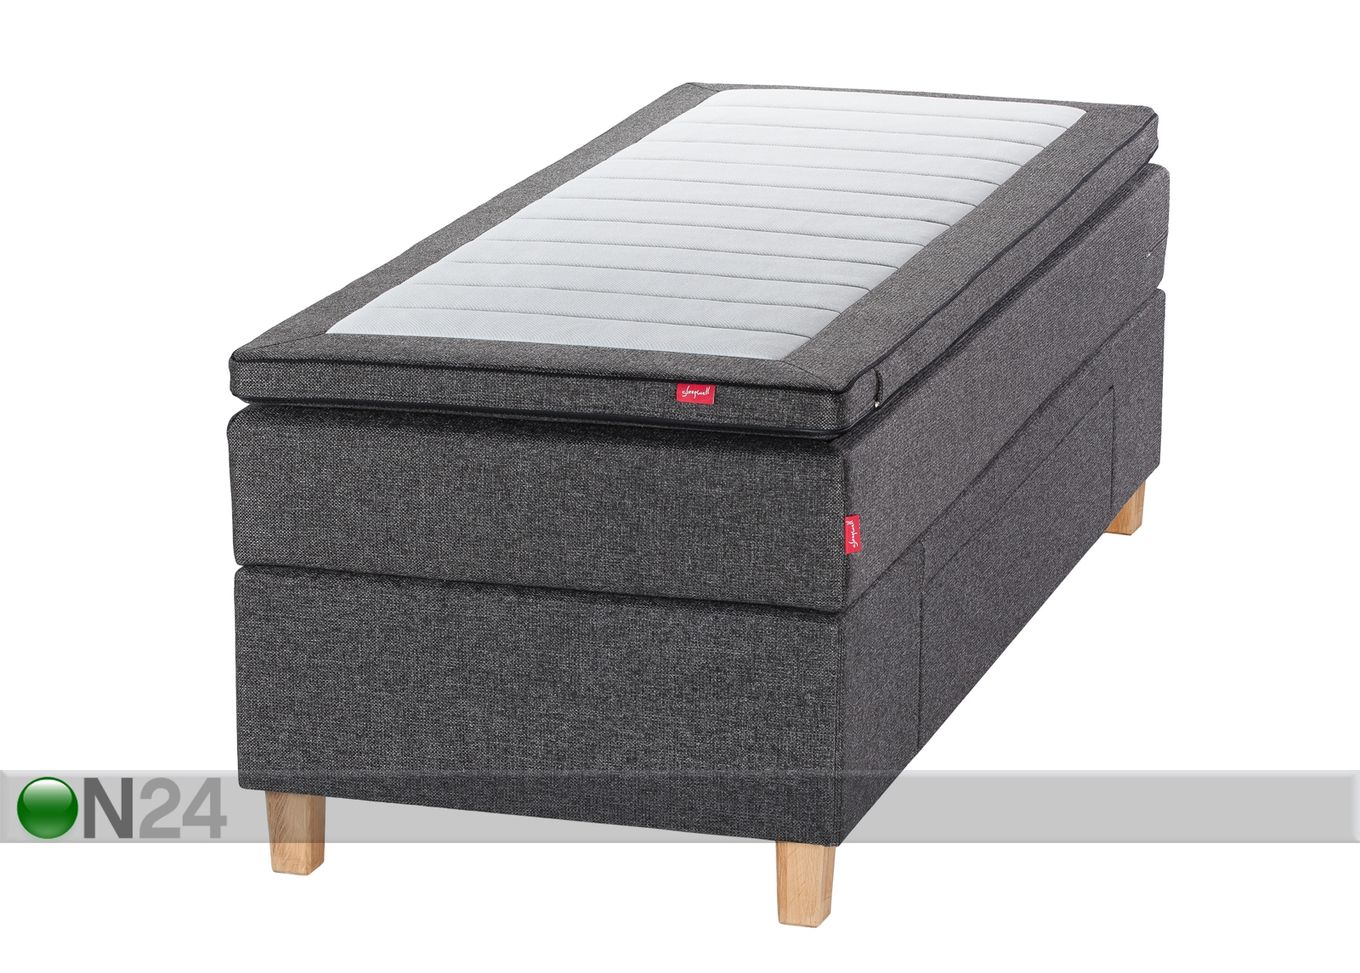 Sleepwell Black континентальная кровать с ящиком 90x200 cm увеличить